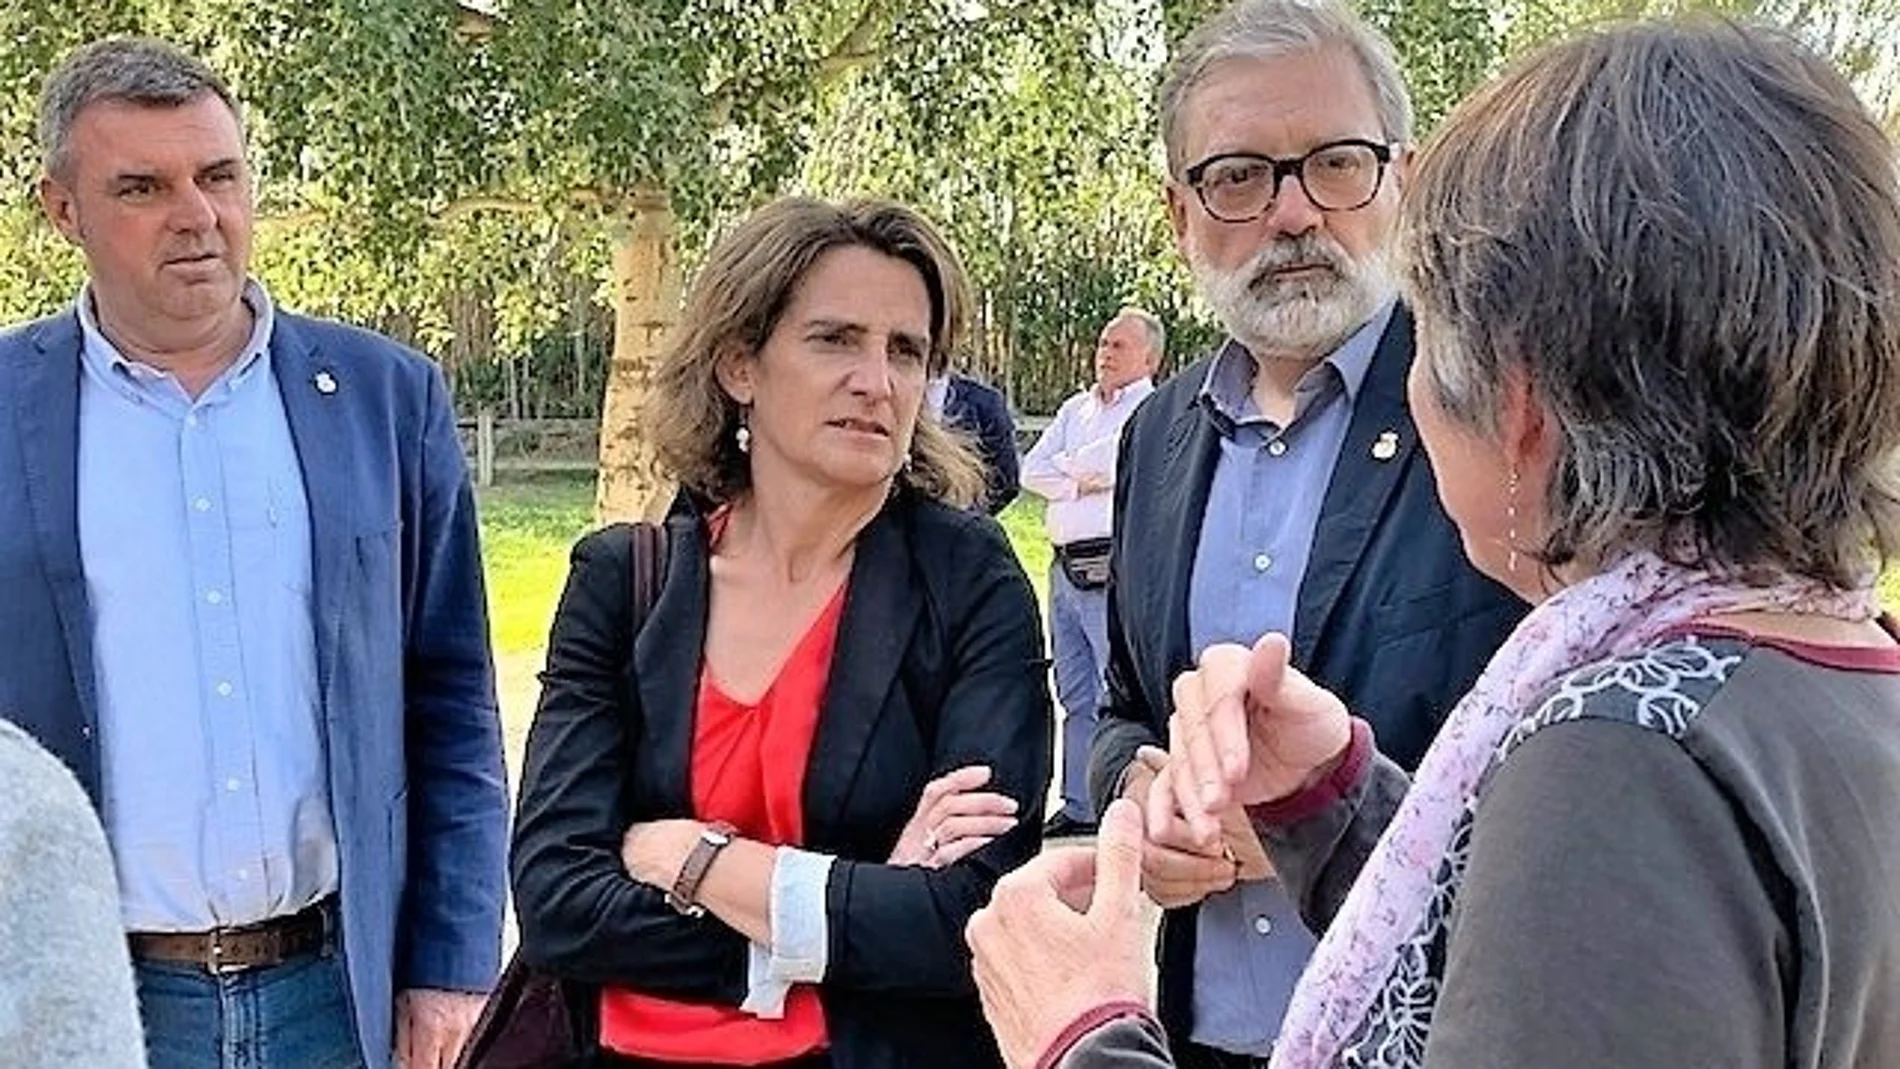 La ministra de Transición Ecológica, Teresa Ribera (PSOE), junto al alcalde de Lérida, Fèlix Larrosa (PSC)